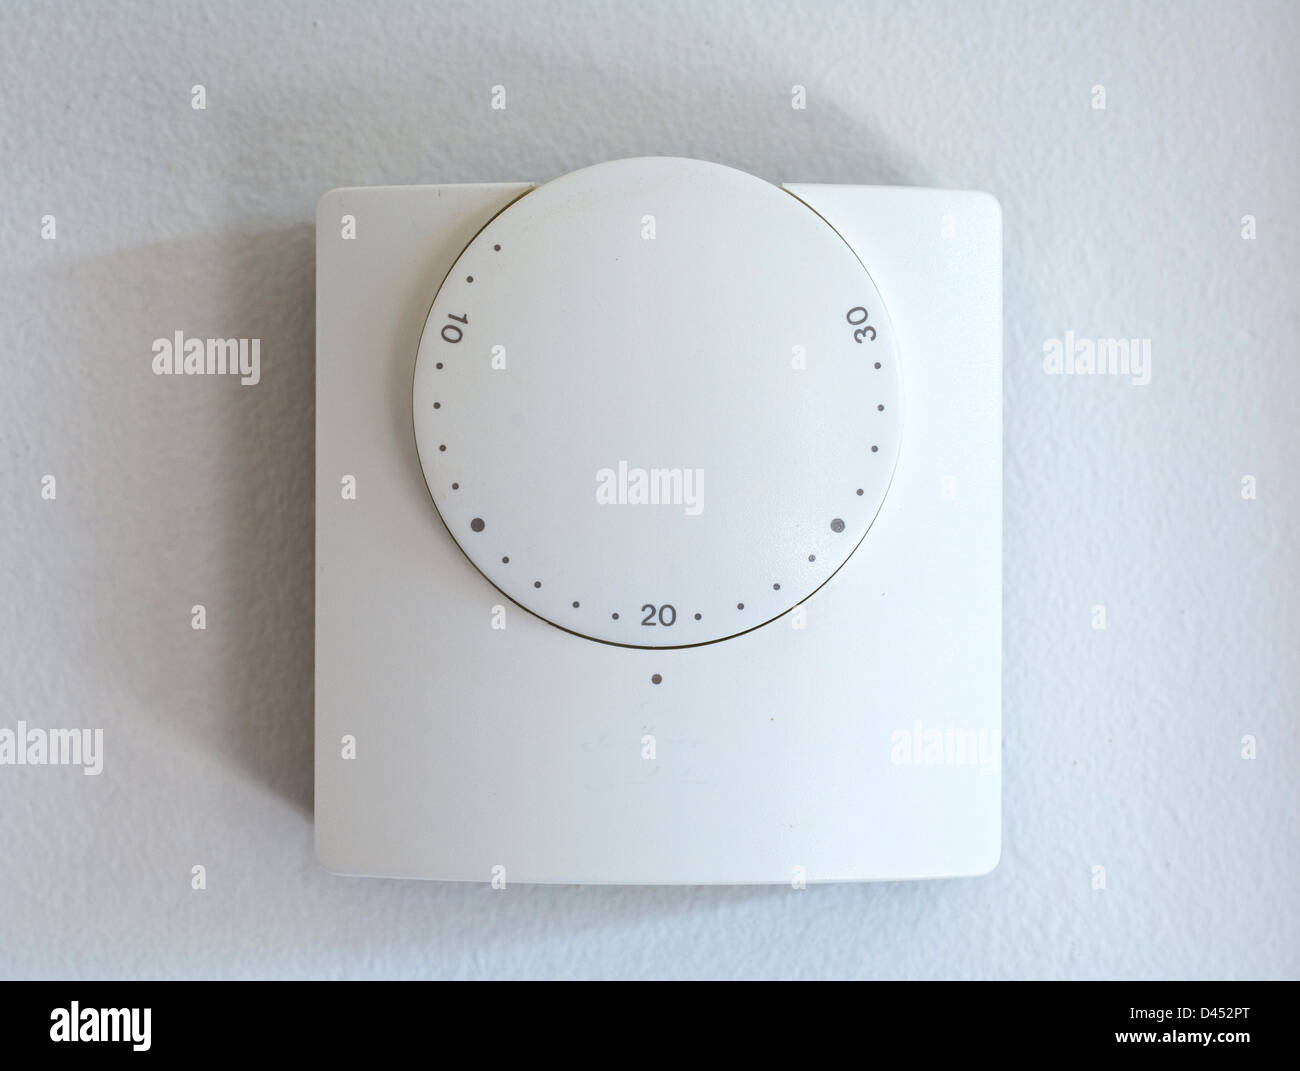 Un riscaldamento a parete di termostato regolato a 20 gradi centigradi Foto Stock